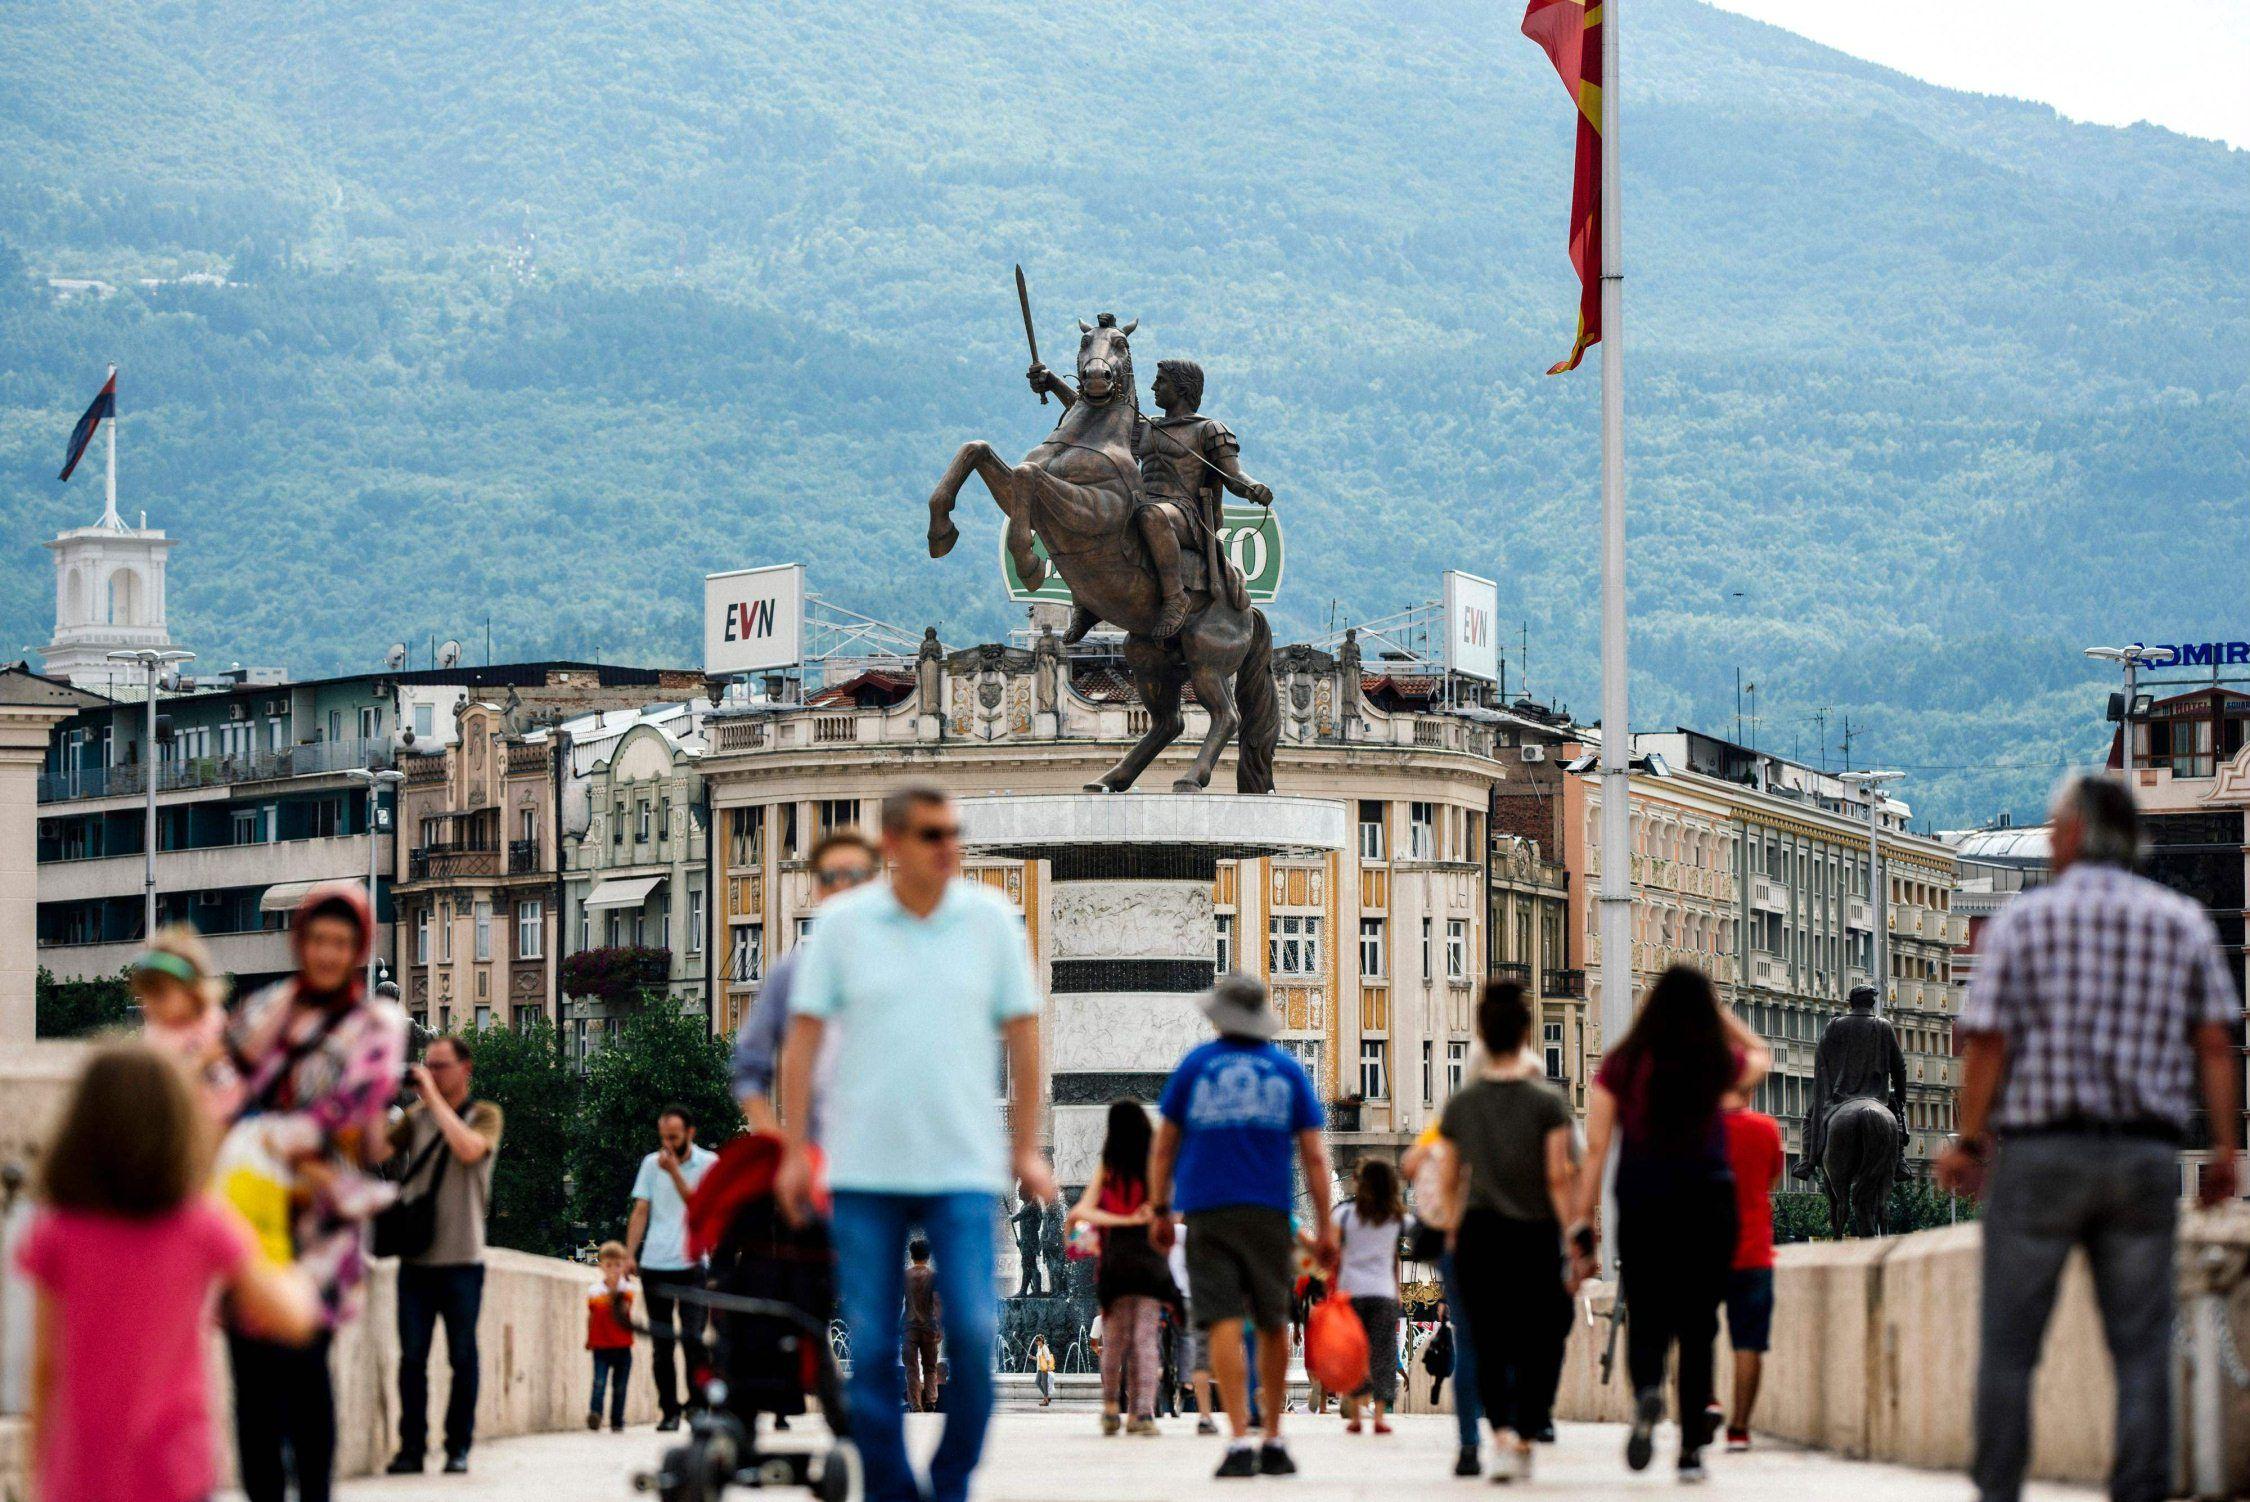 makedonska namnkonflikten